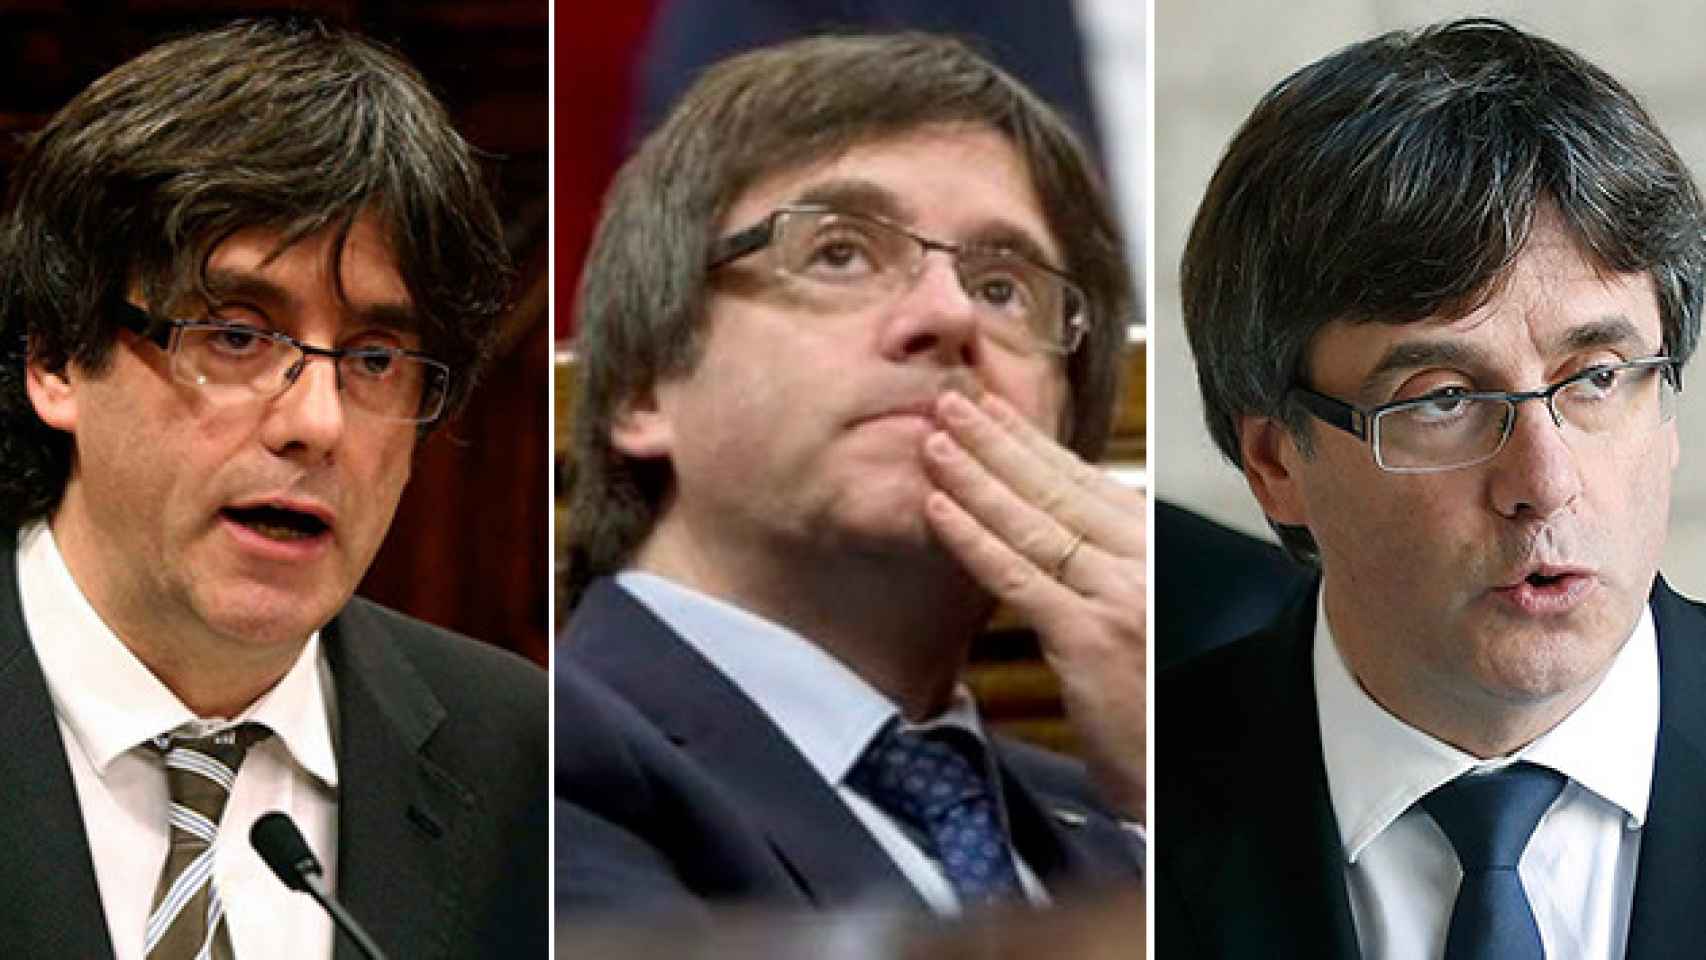 El rostro del presidente catalán, Carles Puigdemont, en el inicio de la legislatura, mitad y el momento actual